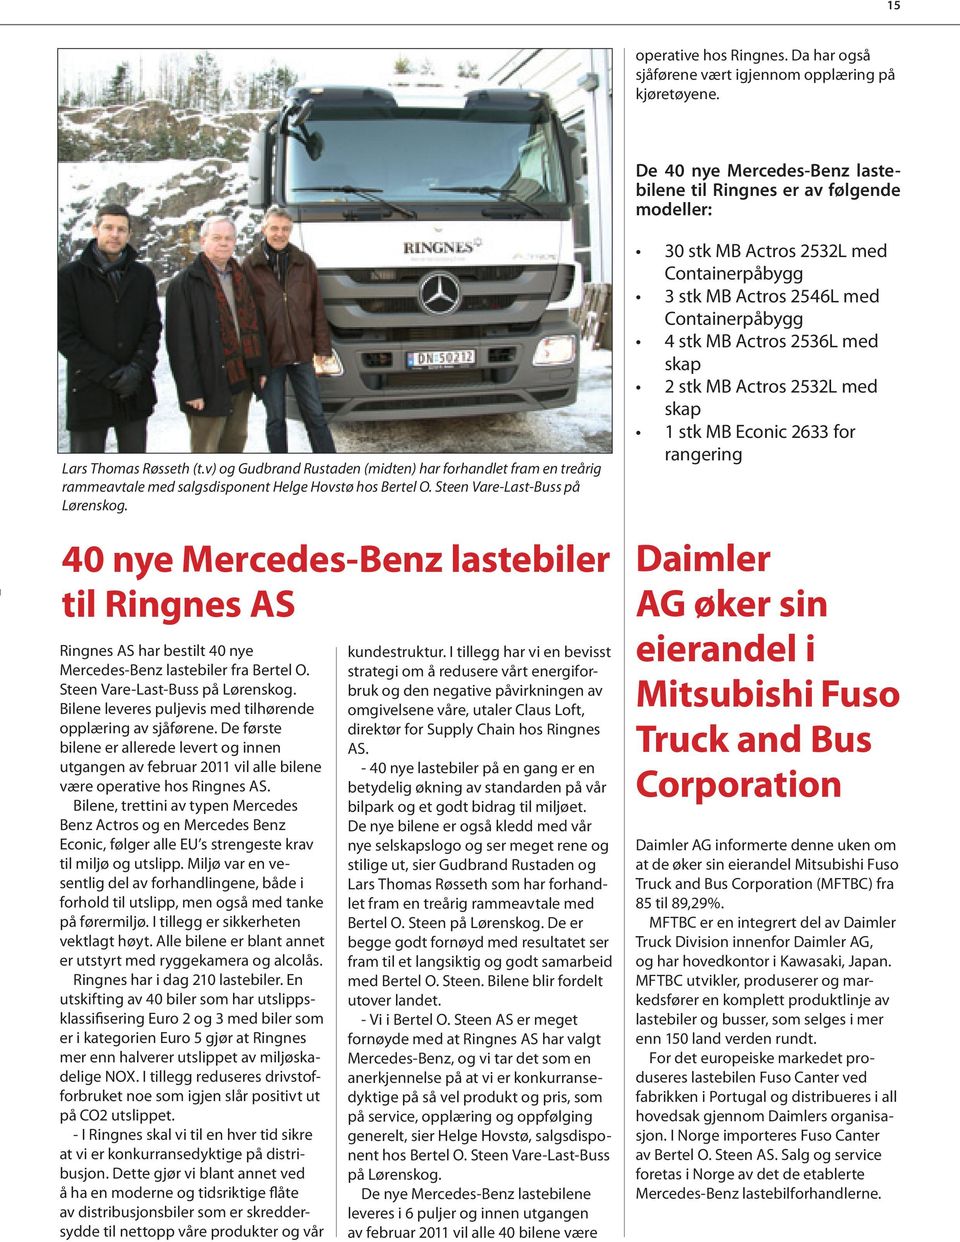 40 nye Mercedes-Benz lastebiler til Ringnes AS Ringnes AS har bestilt 40 nye Mercedes-Benz lastebiler fra Bertel O. Steen Vare-Last-Buss på Lørenskog.